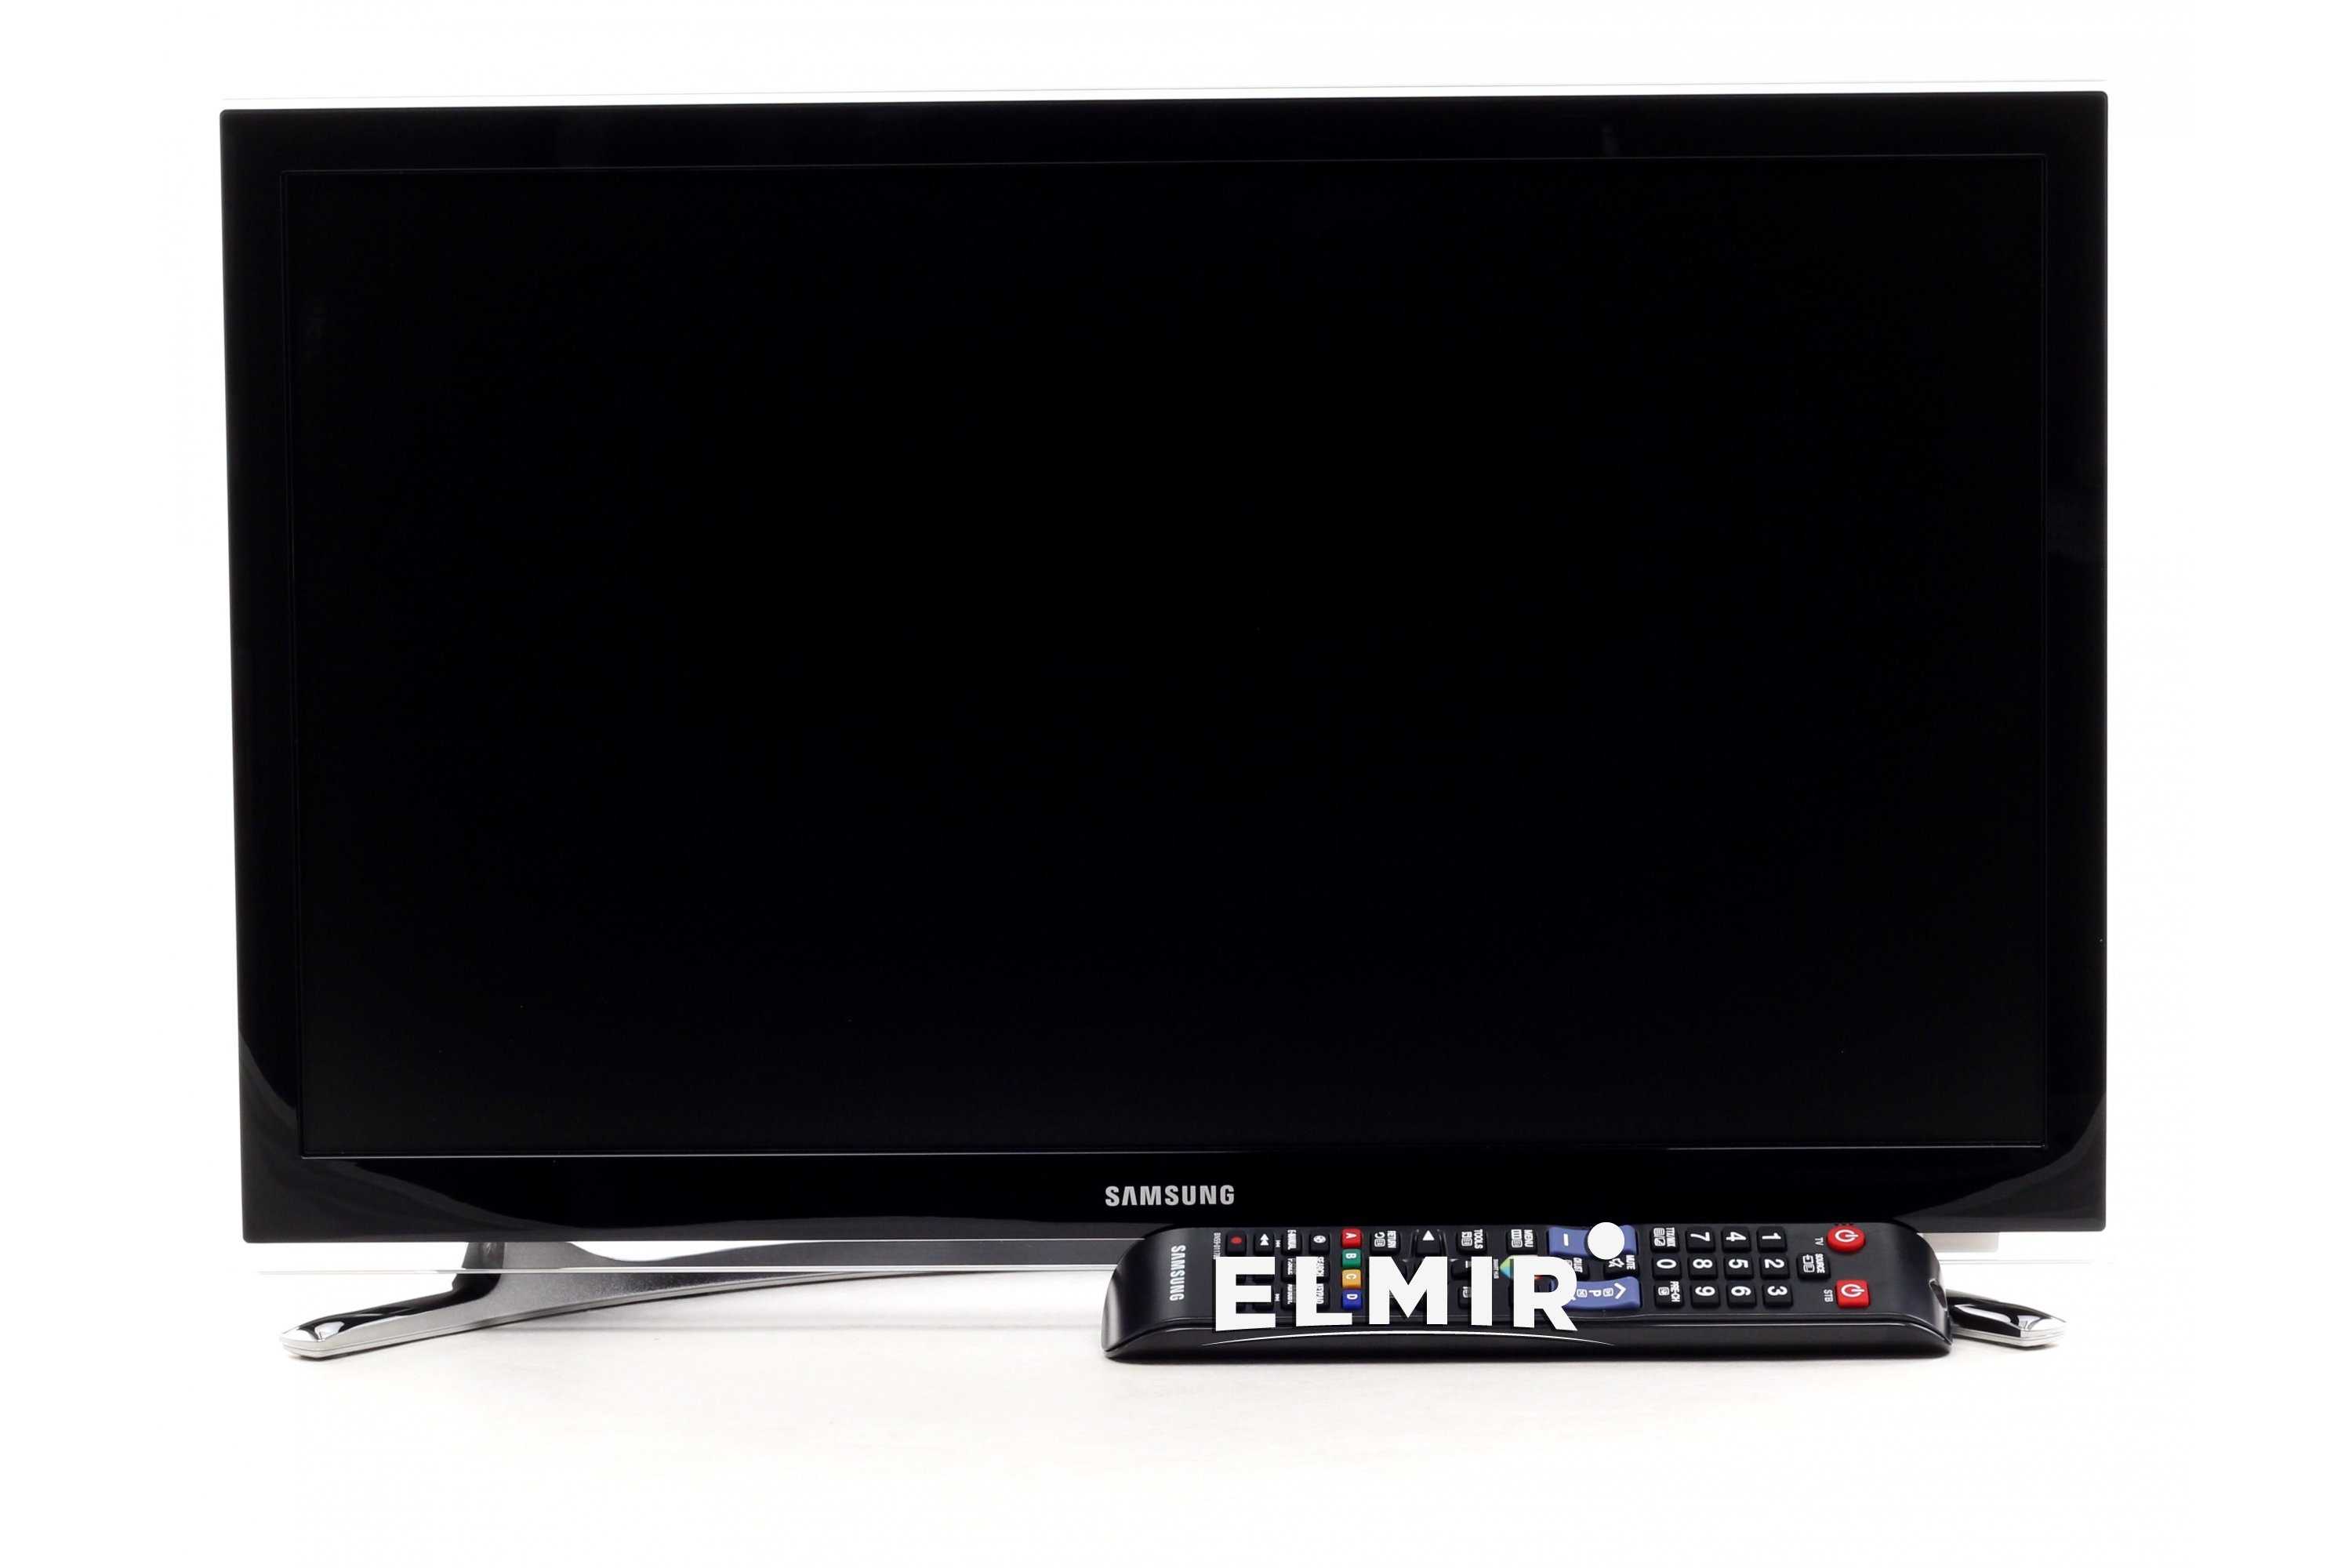 Телевизор samsung akxua ue22h5600 купить от 12837 руб в екатеринбурге, сравнить цены, отзывы, видео обзоры и характеристики